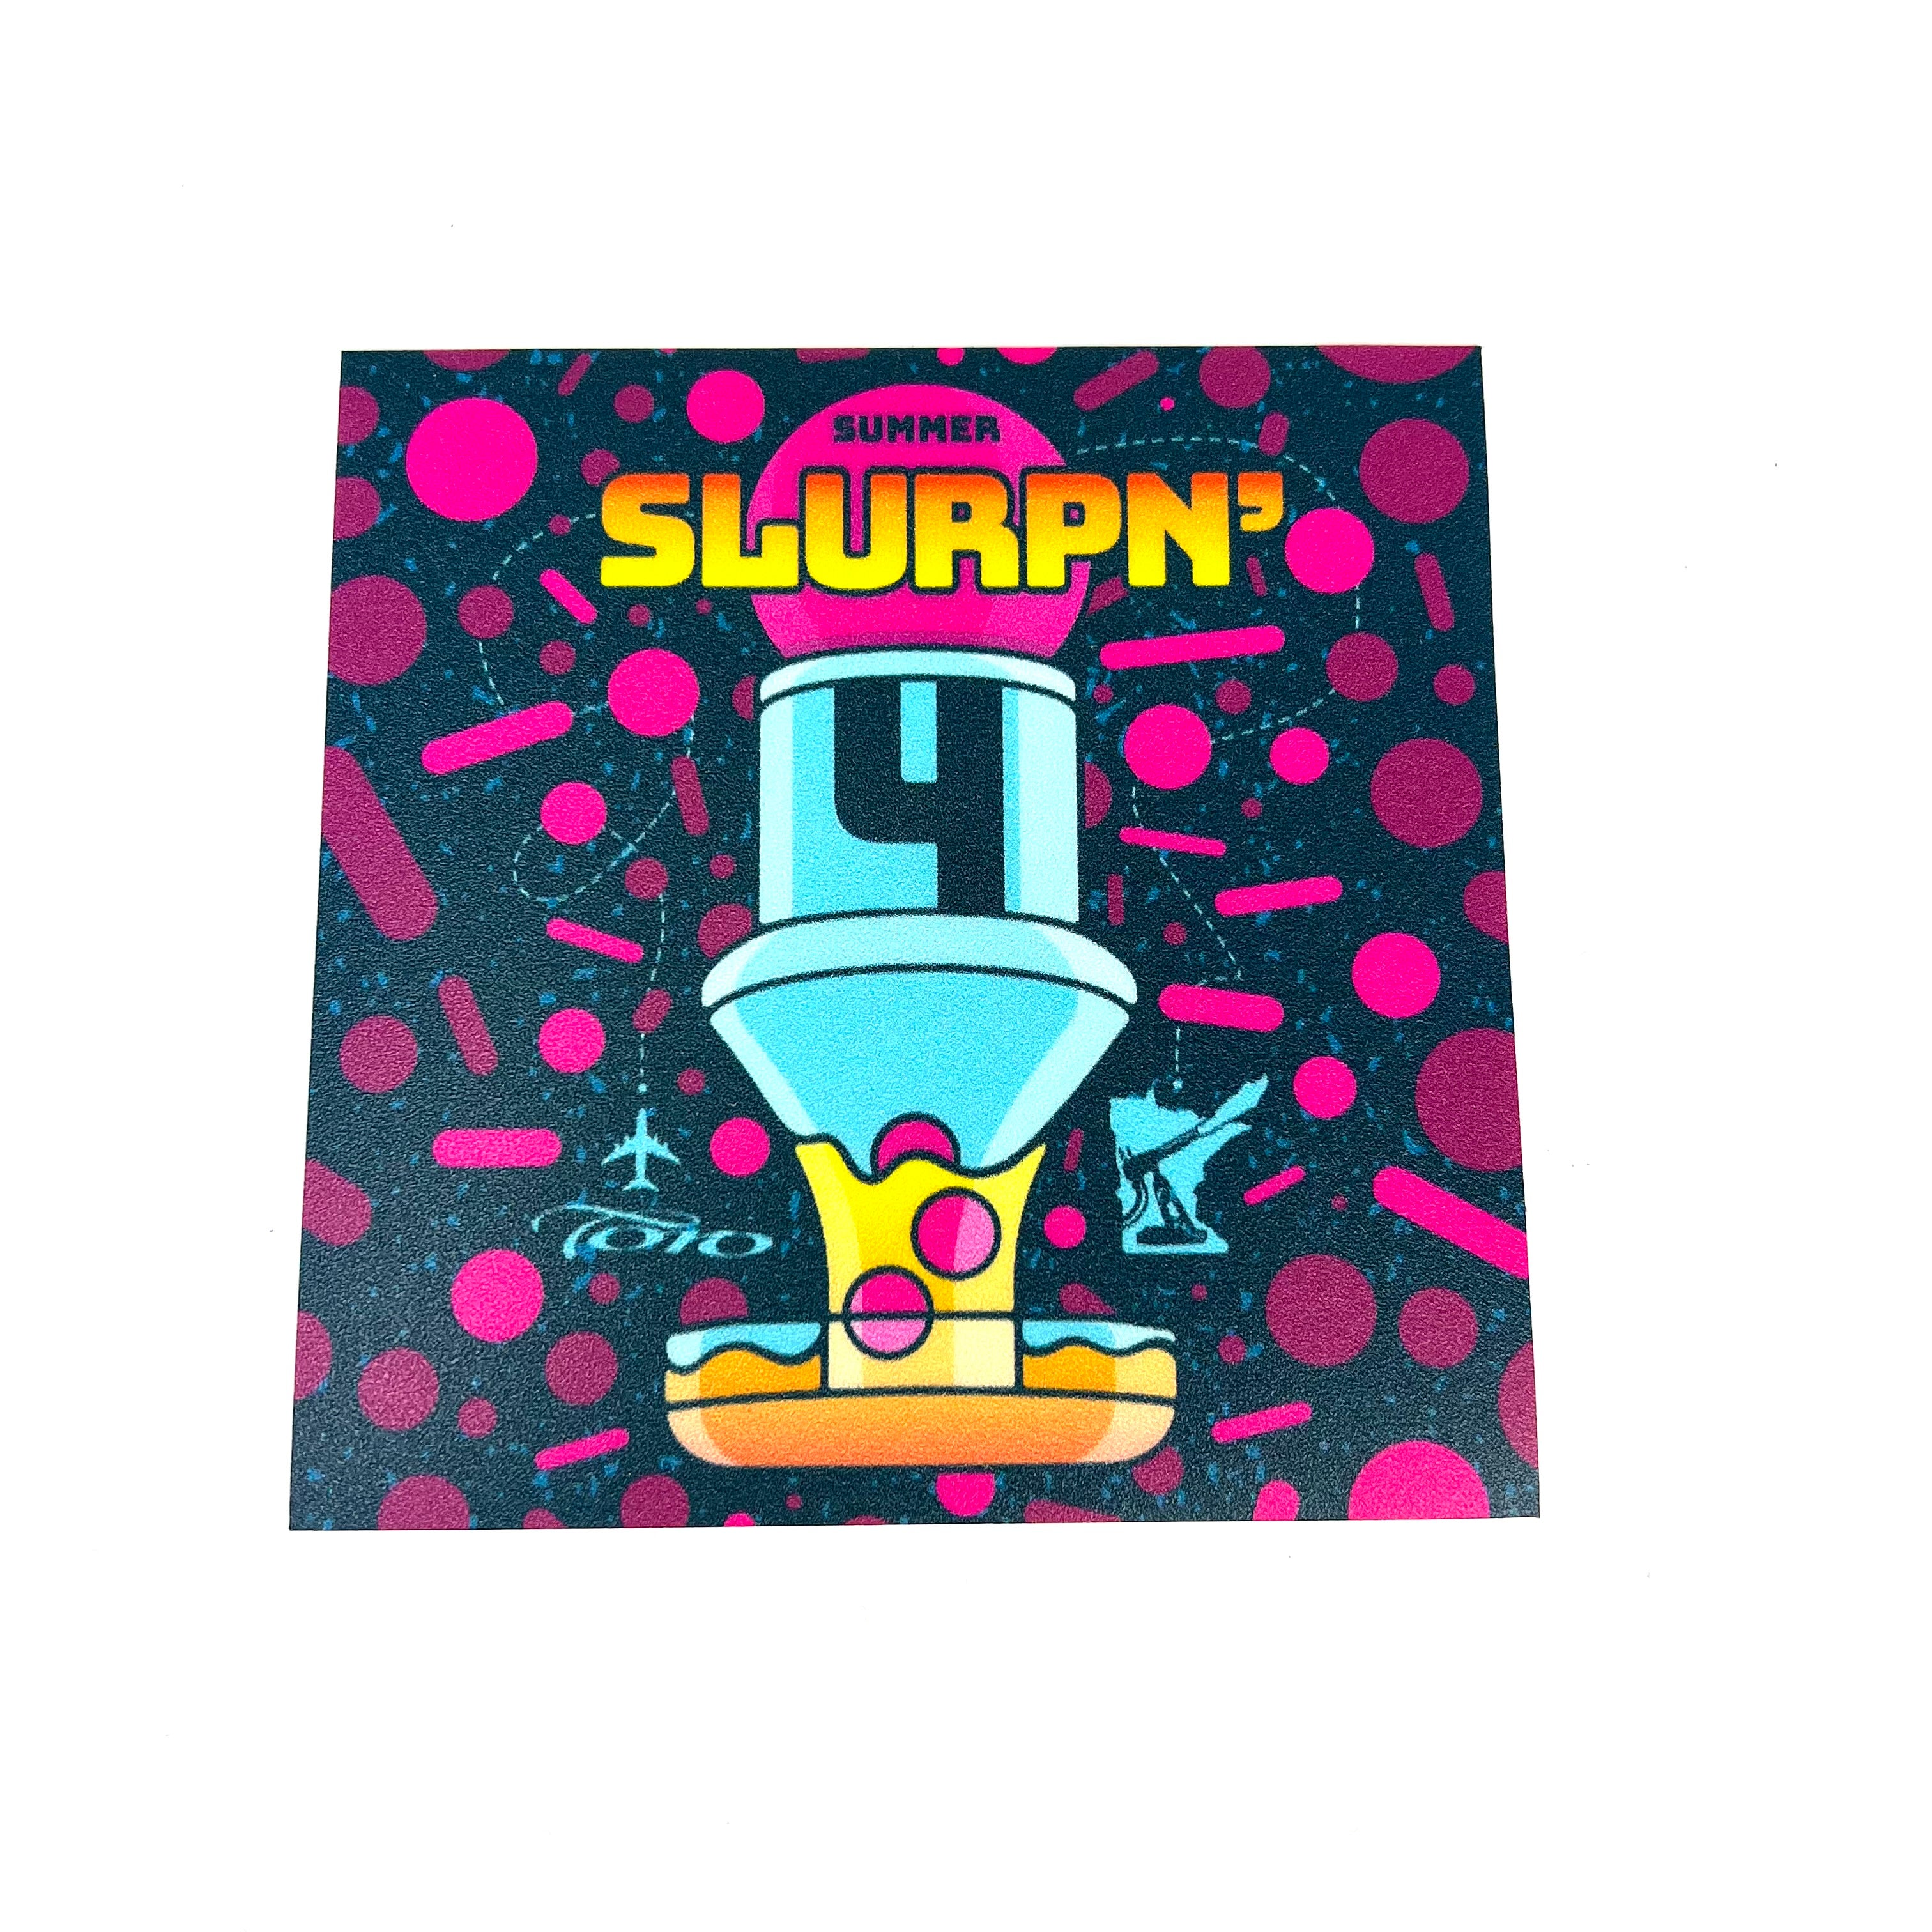 Summer Slurpn 4 Sticker